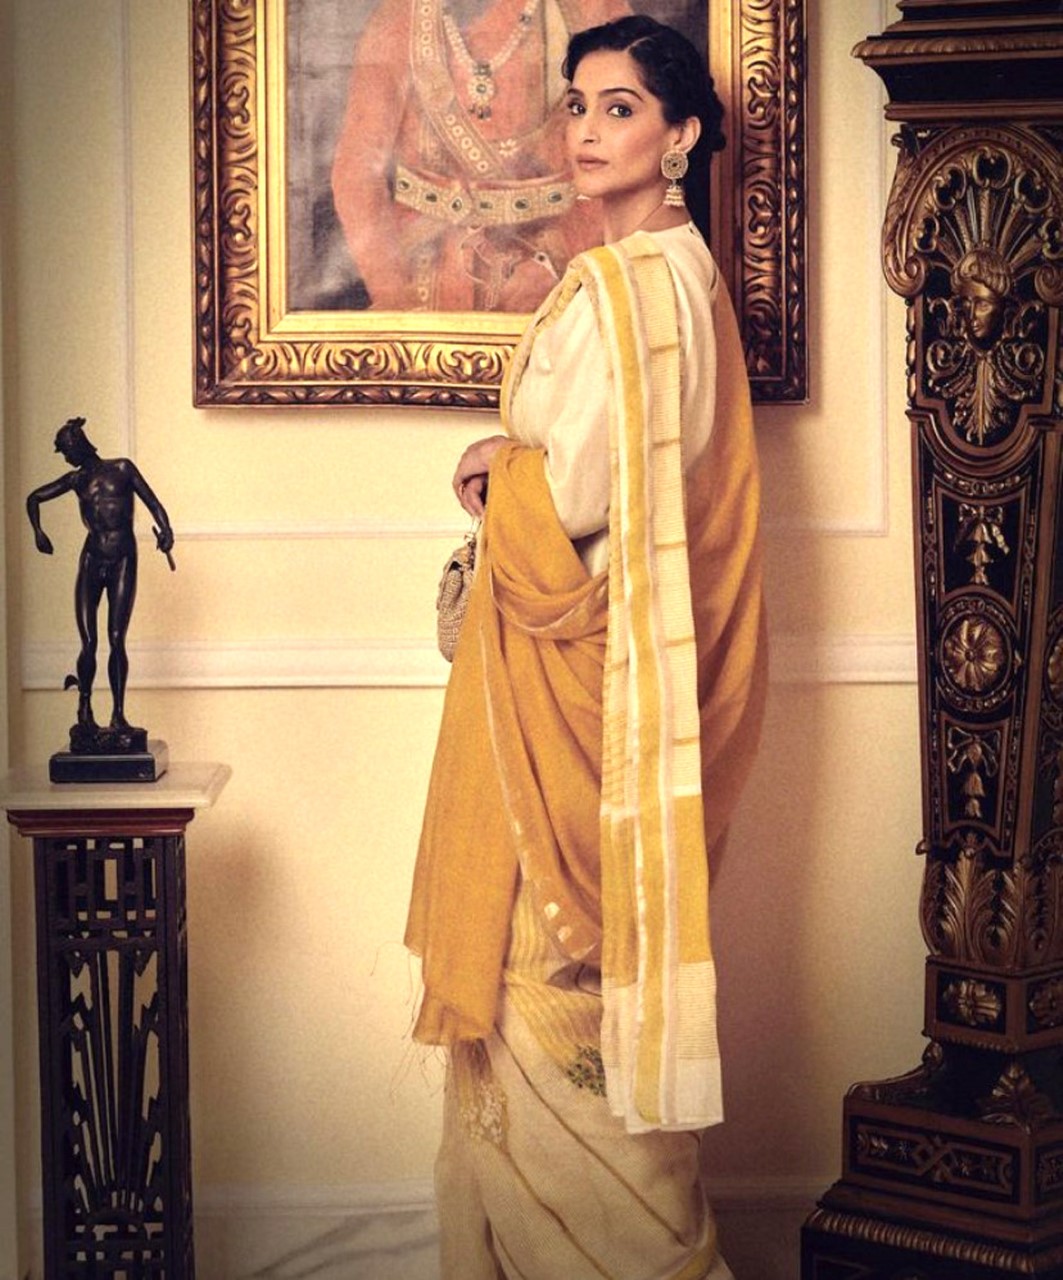 Sonam Kapoor oozes unique ethnic charm in yellow linen saree